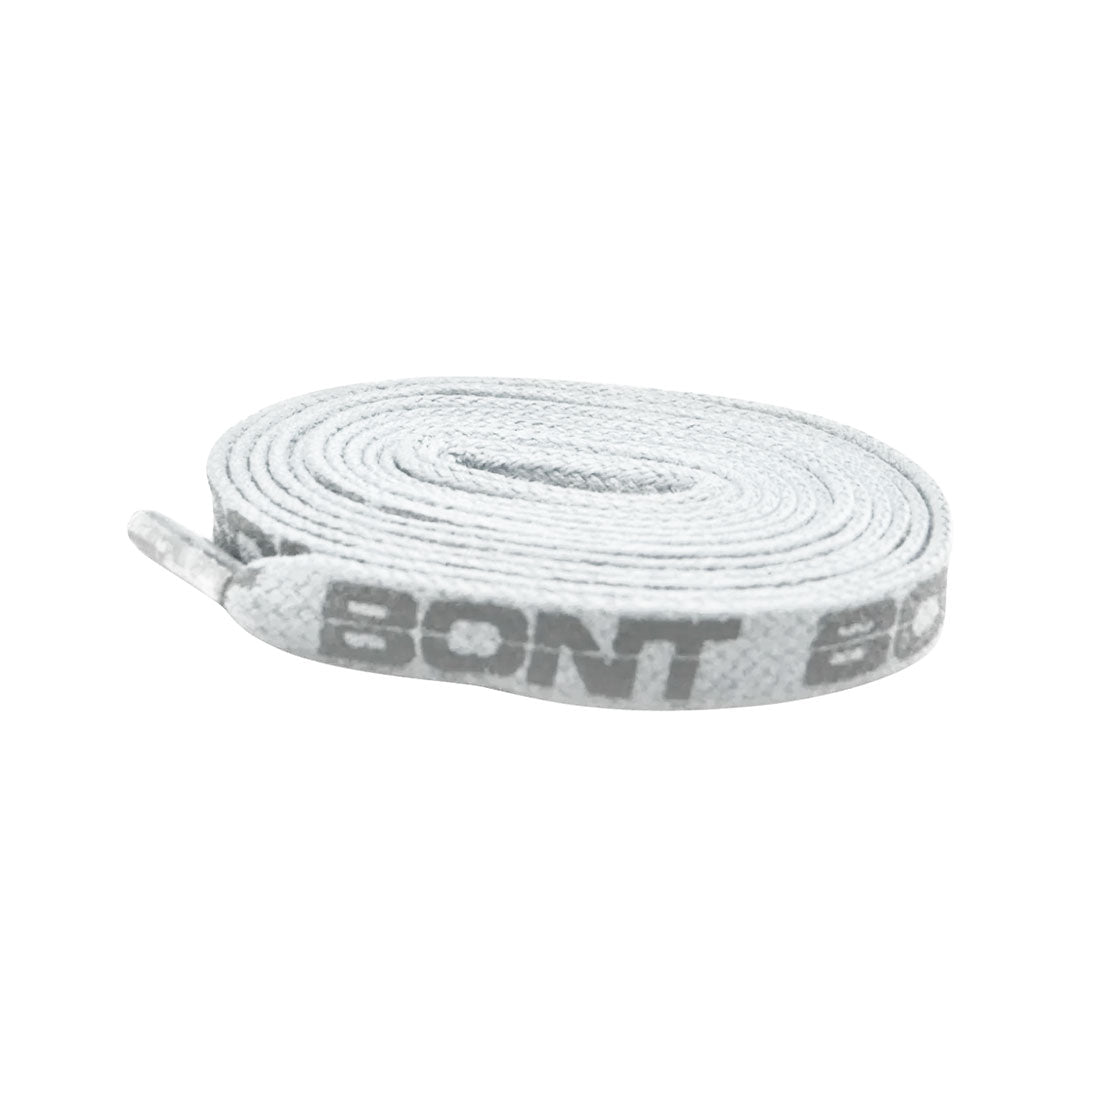 BONT Skate 10mm Laces - 150cm / 59in - White Laces